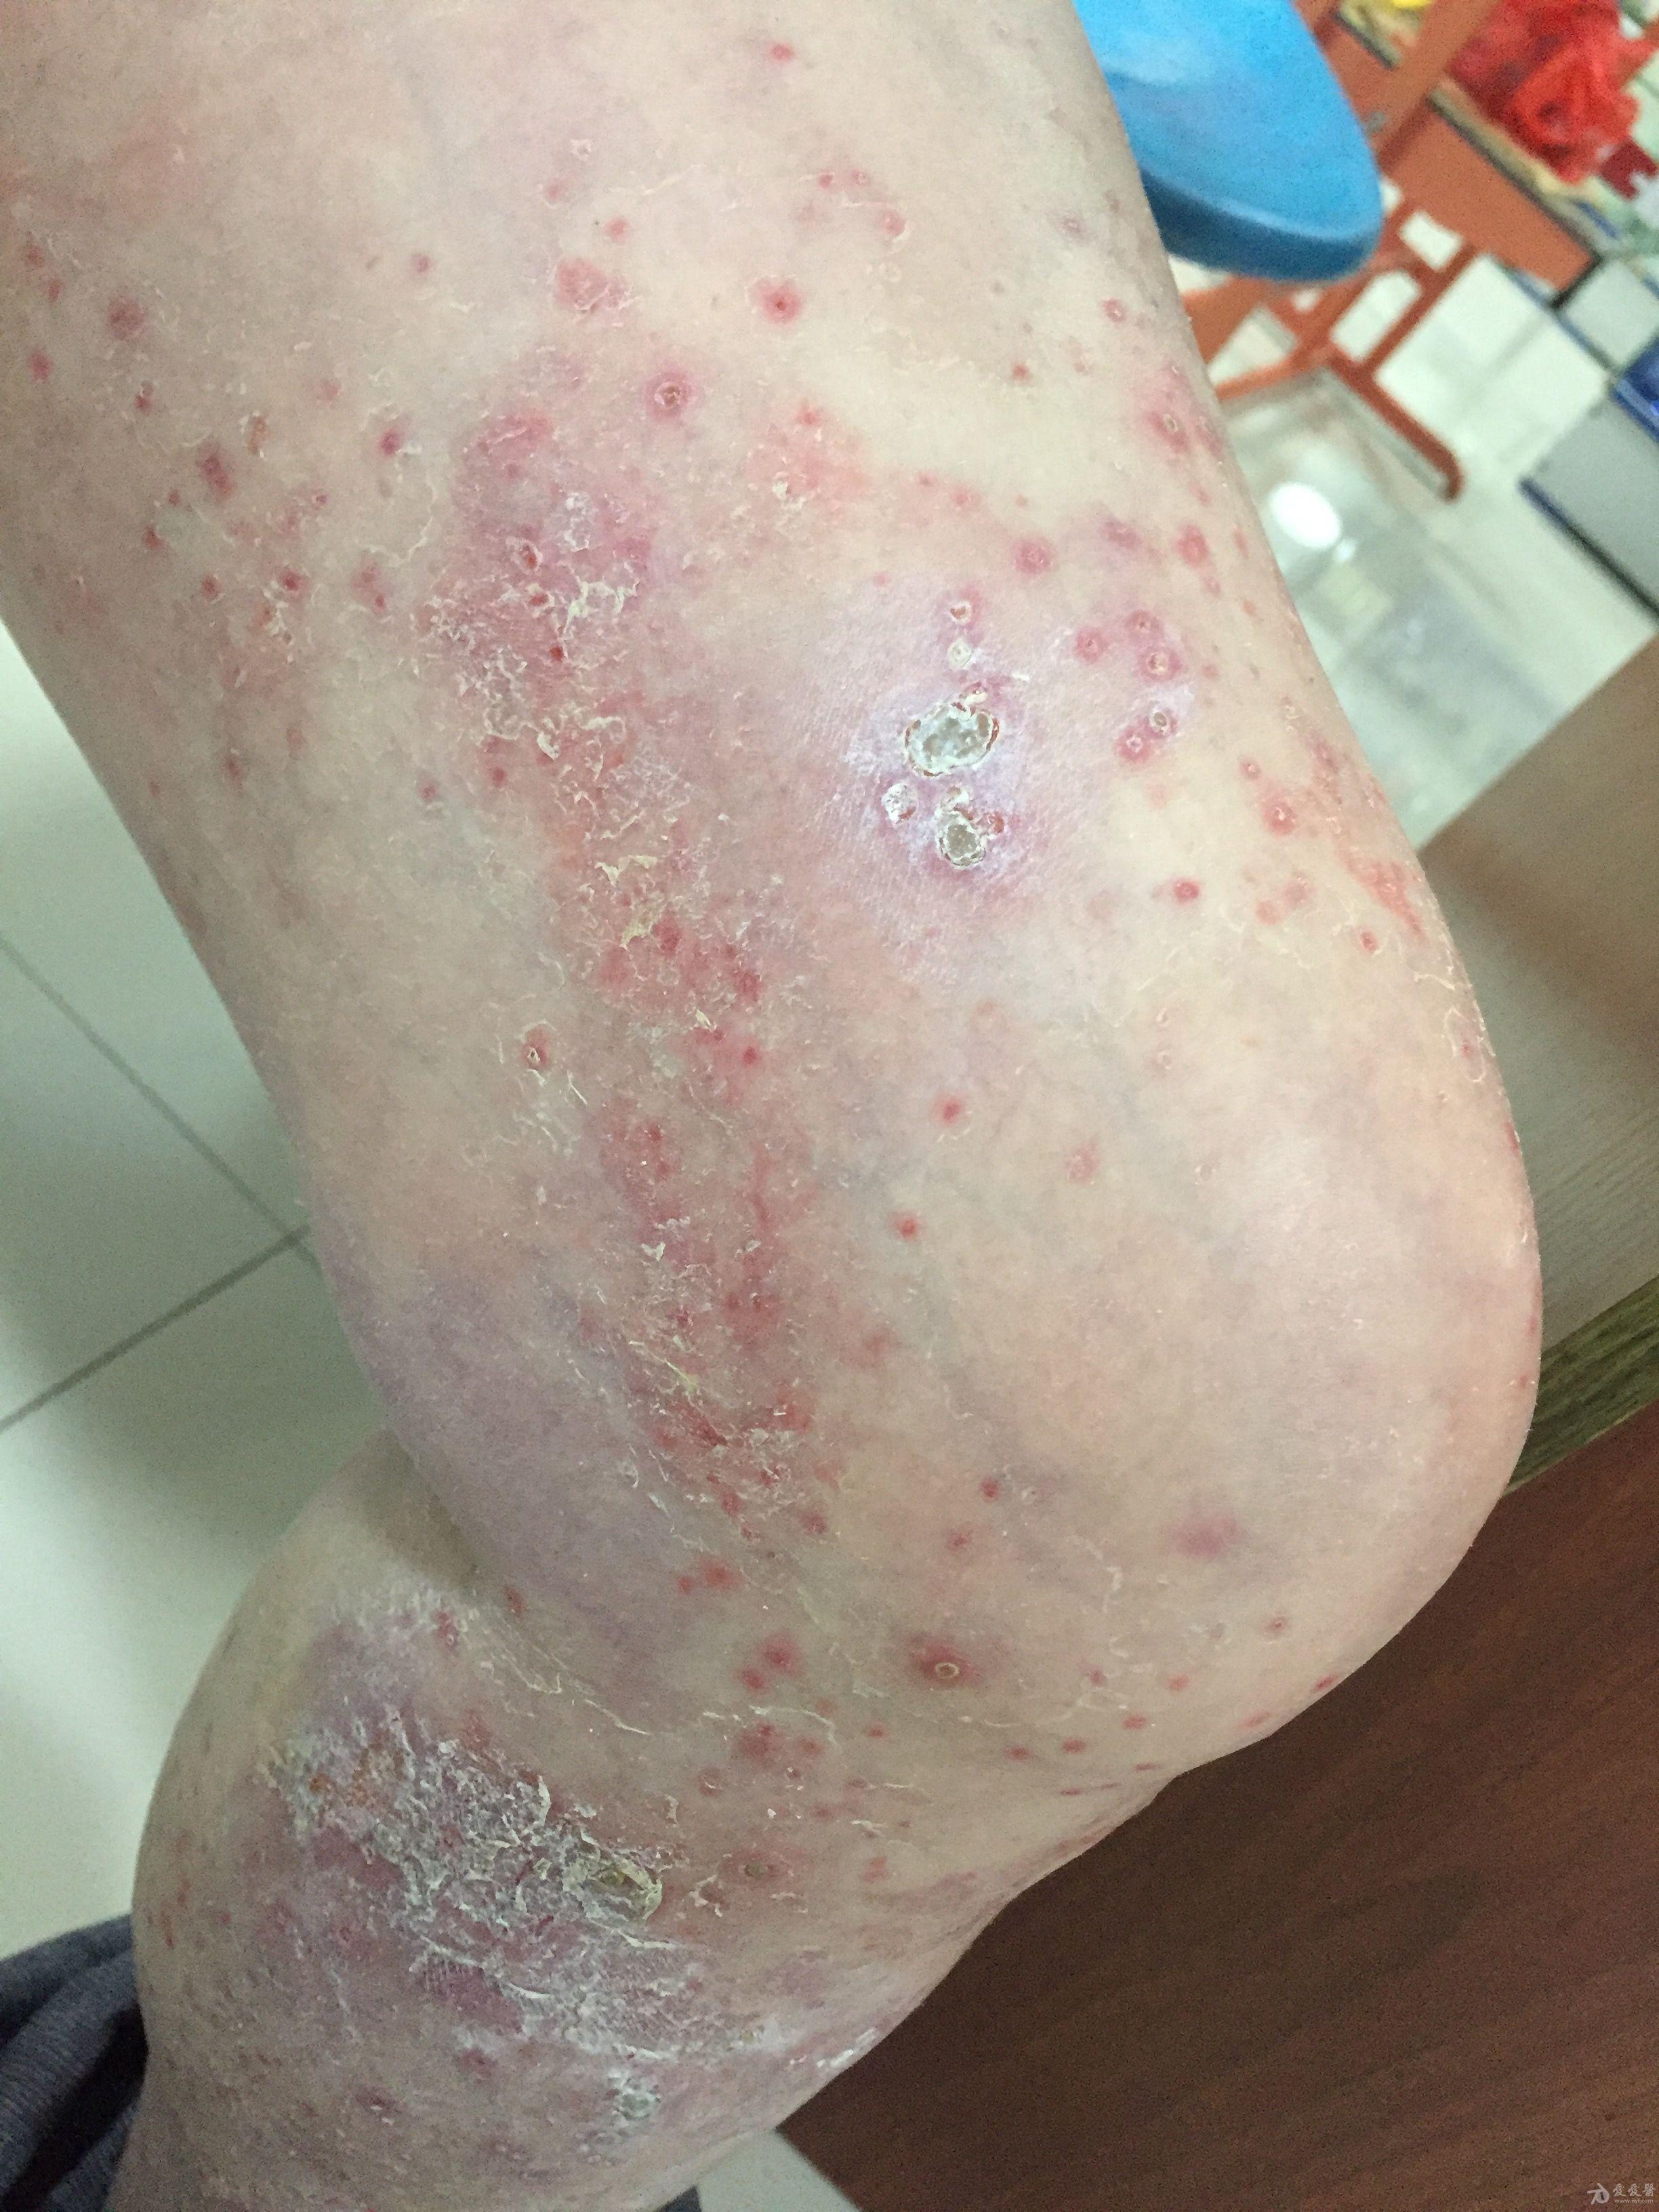 看图说话:腿上红疹,是什么皮肤病?